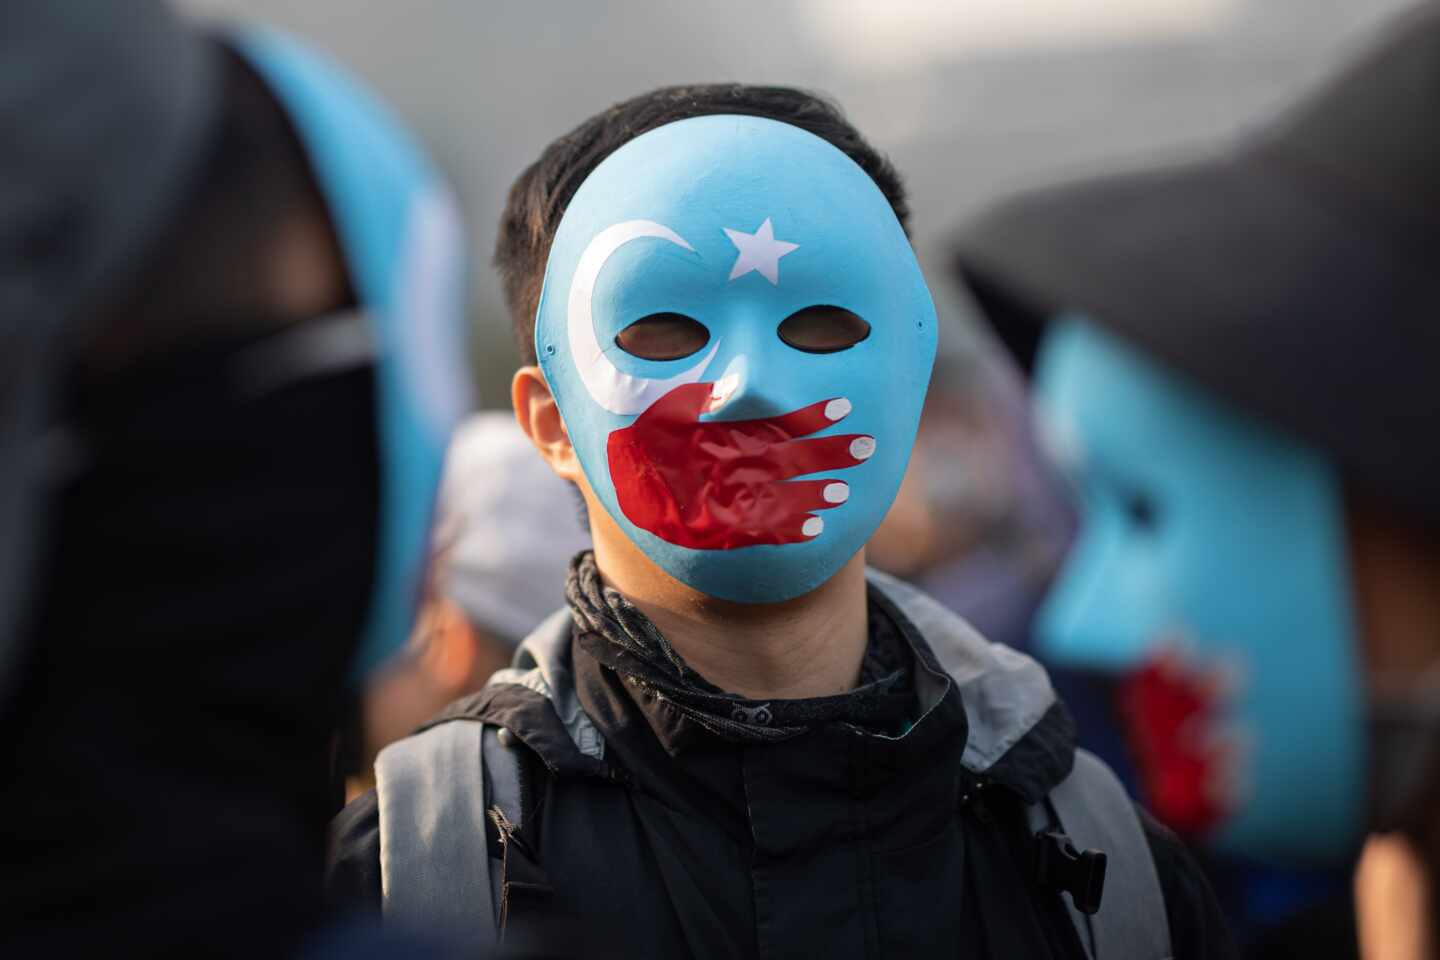 Protestas pro uigures